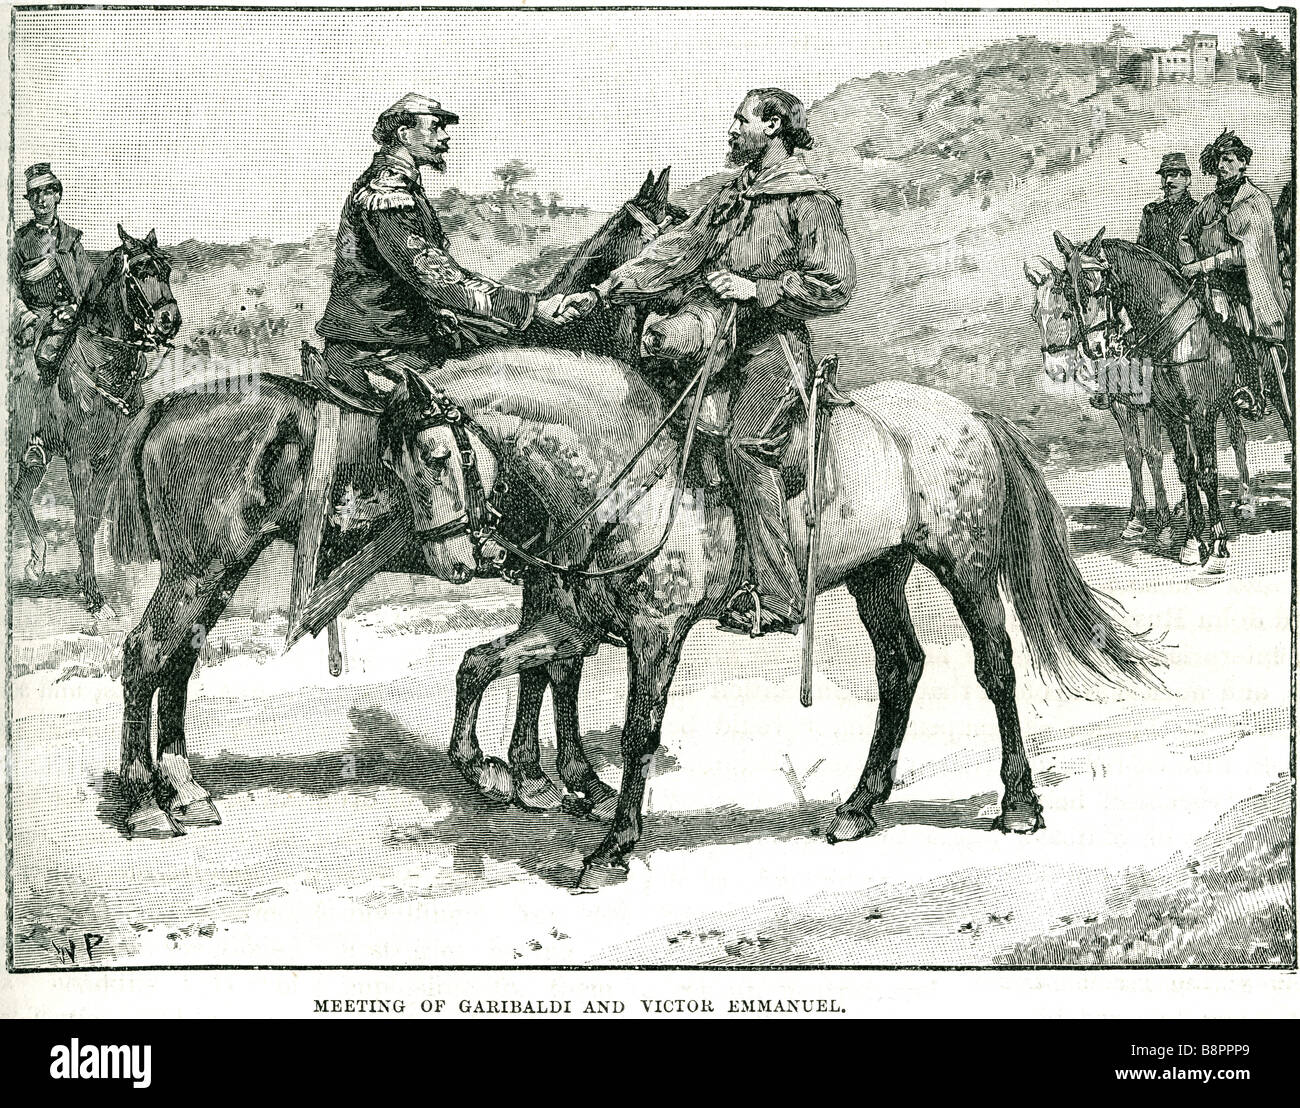 King Vittorio Emanuele II on horseback, 1855 - Gerolamo Induno